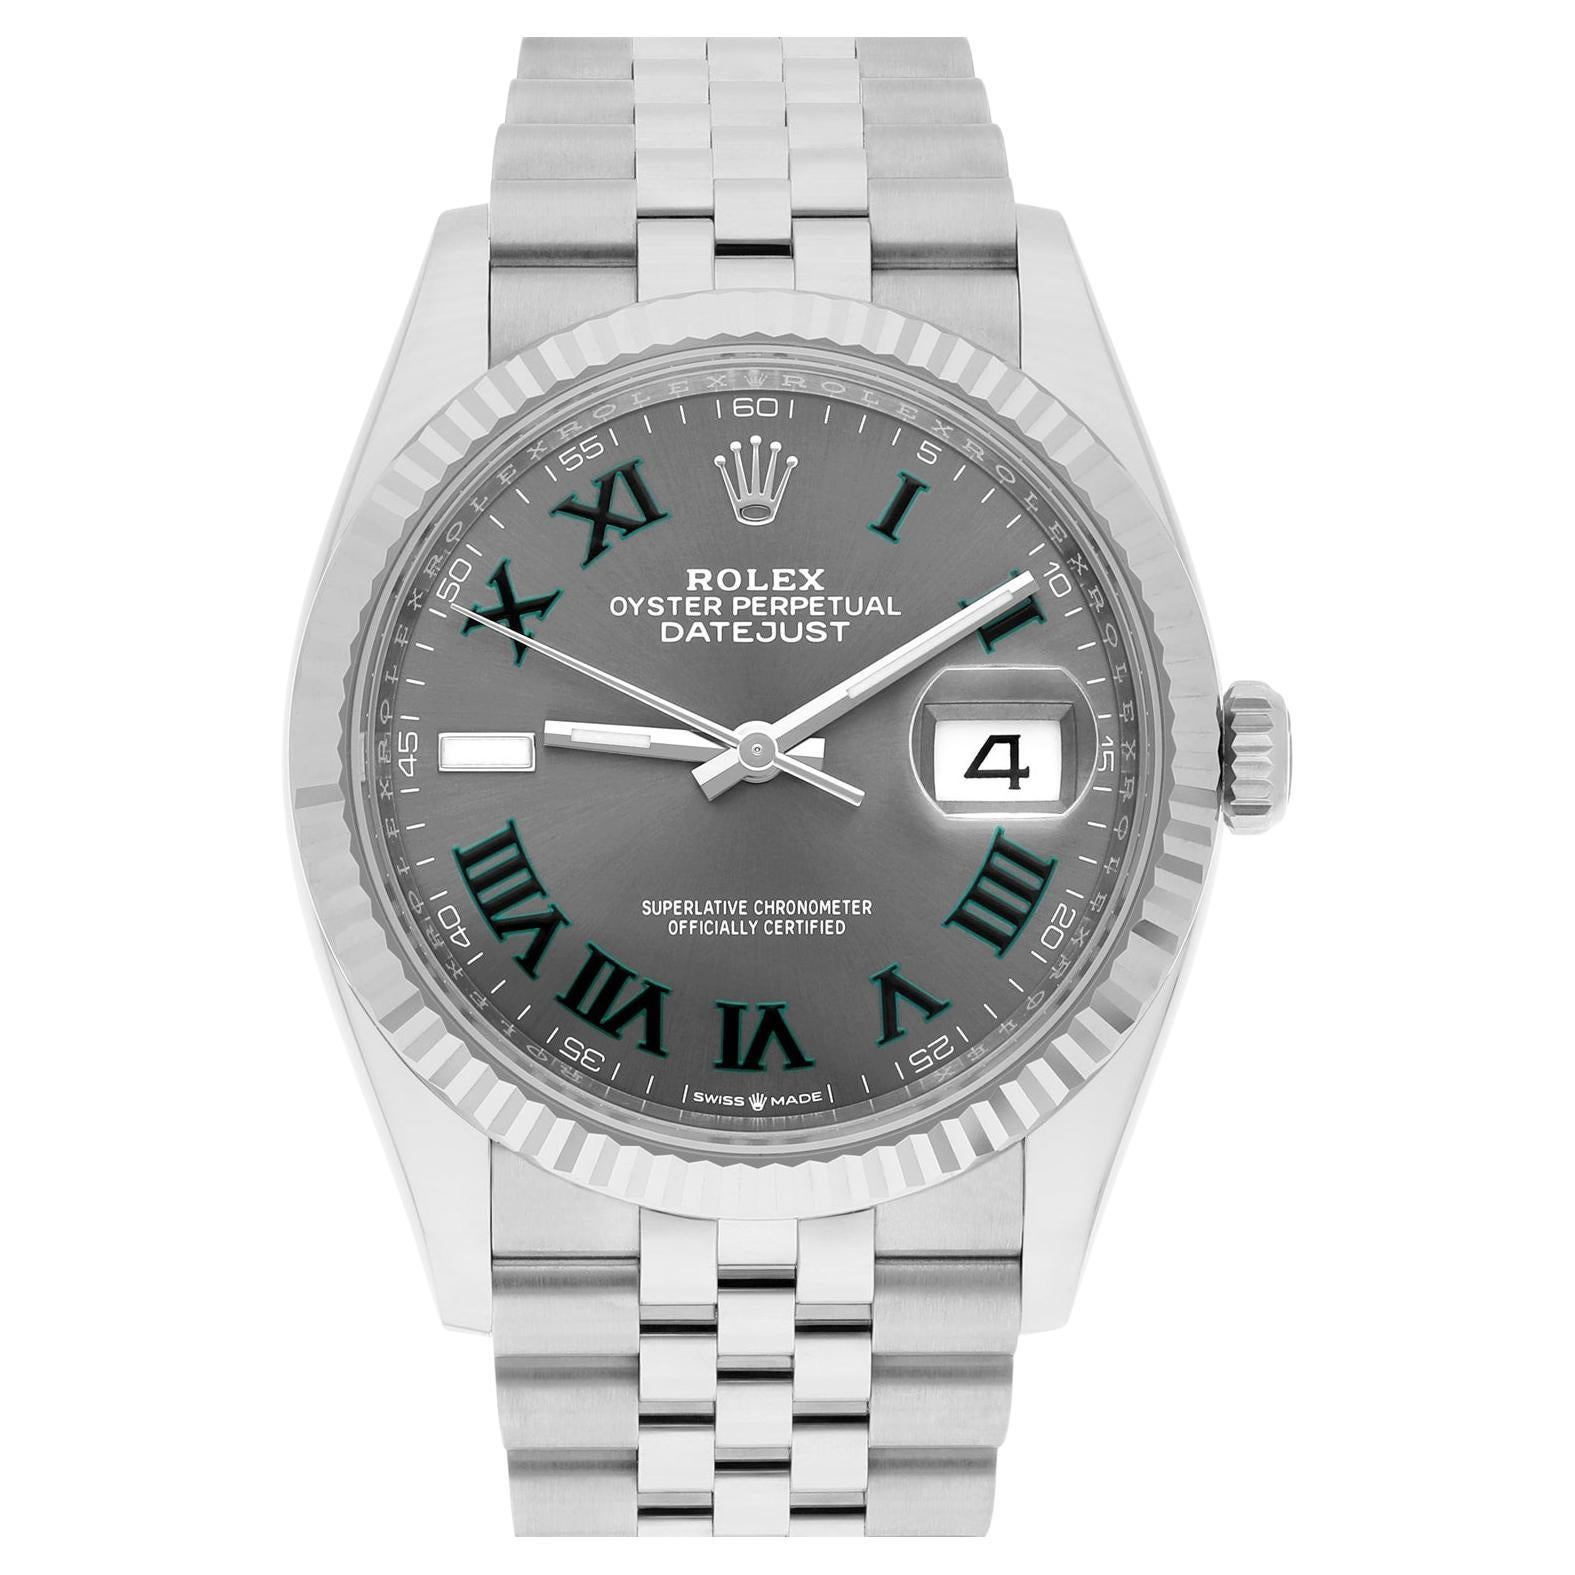 Did Rolex make a quartz watch?